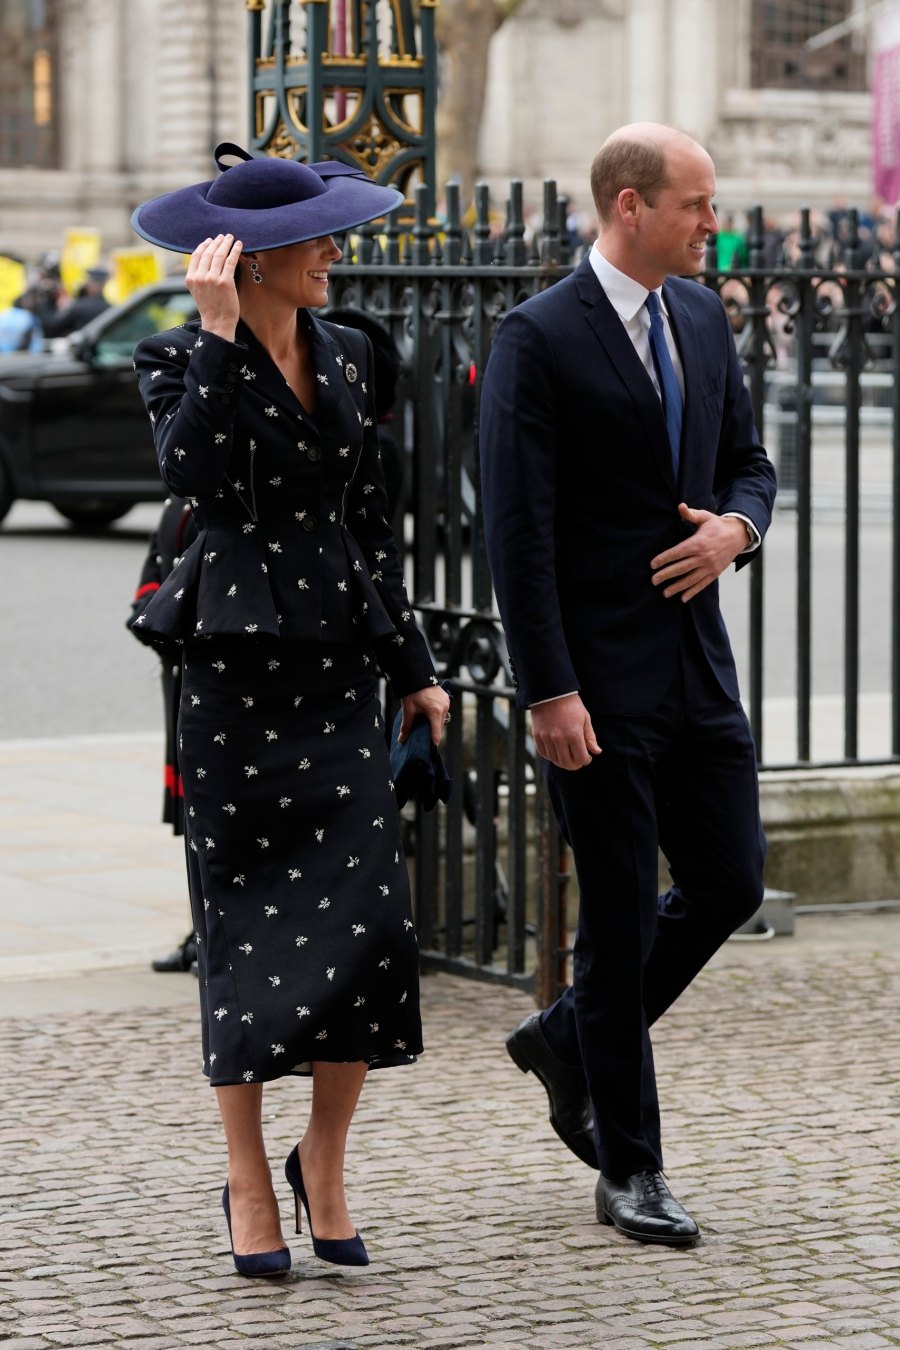 Η Kate Middleton επιστρέφει στα πανάκριβα looks της με ένα κομψό ταγιέρ κατευθείαν από την πασαρέλα